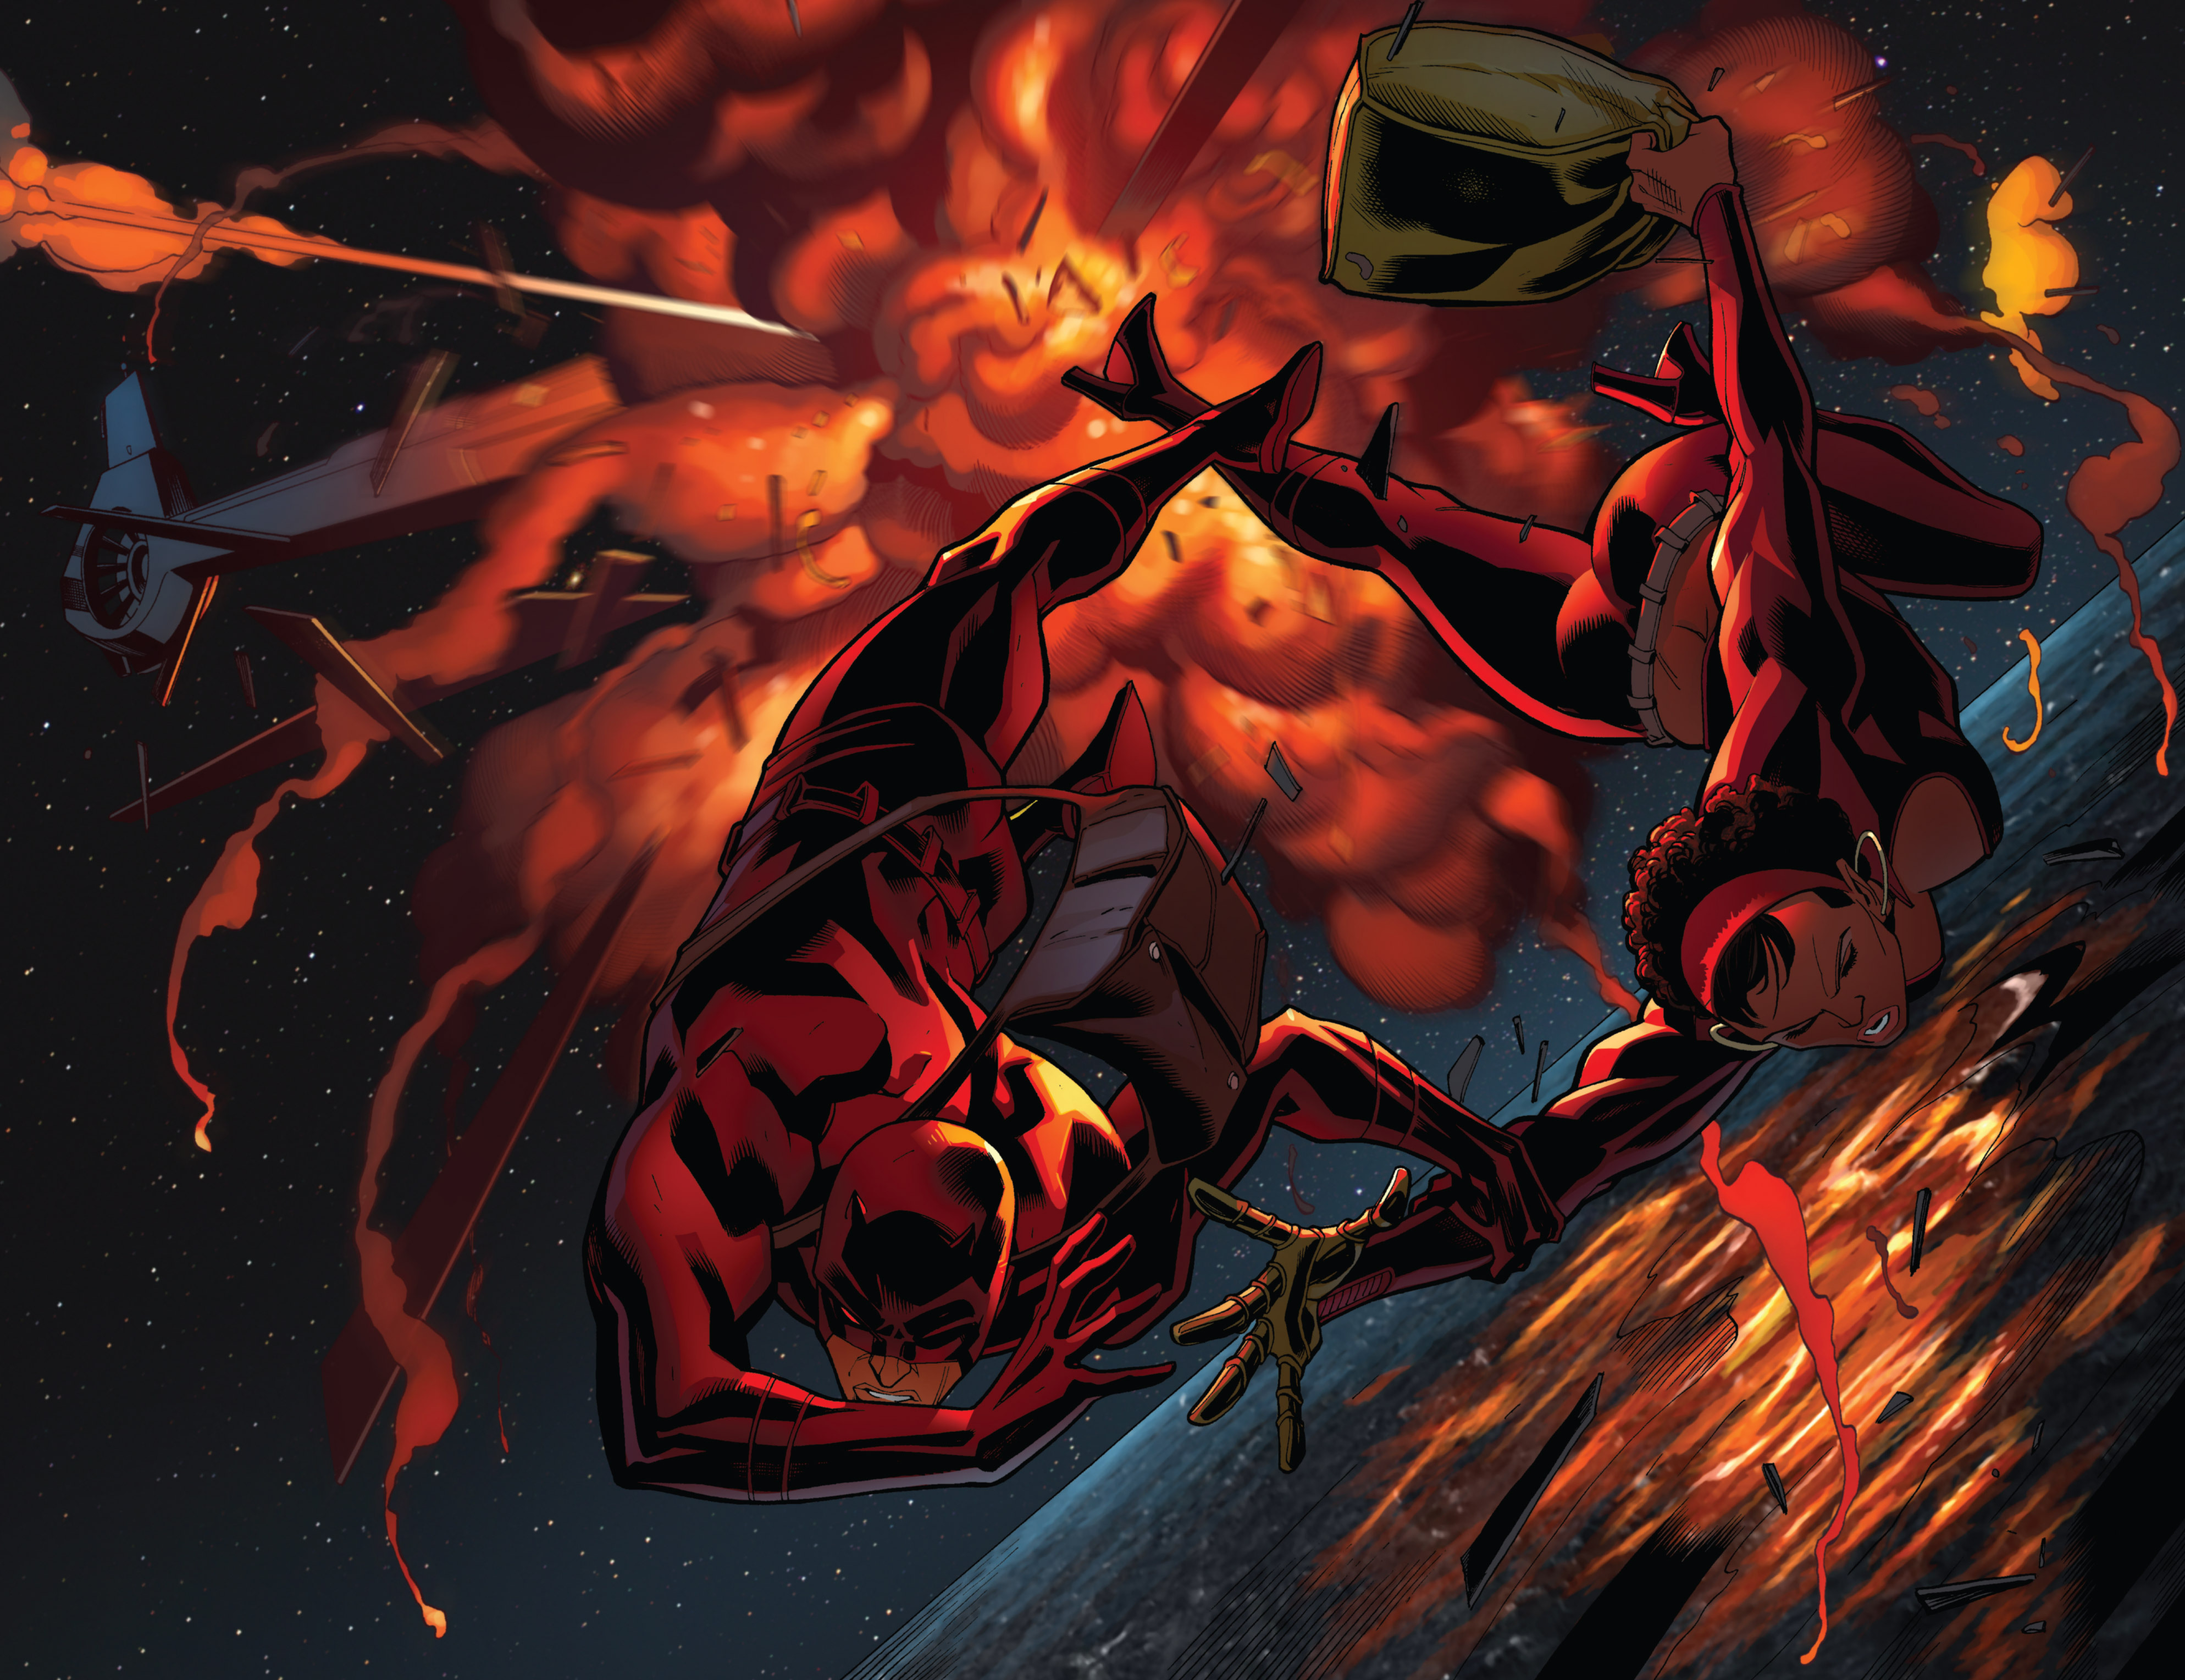 Read online Daredevil: Dark Nights comic -  Issue #7 - 4